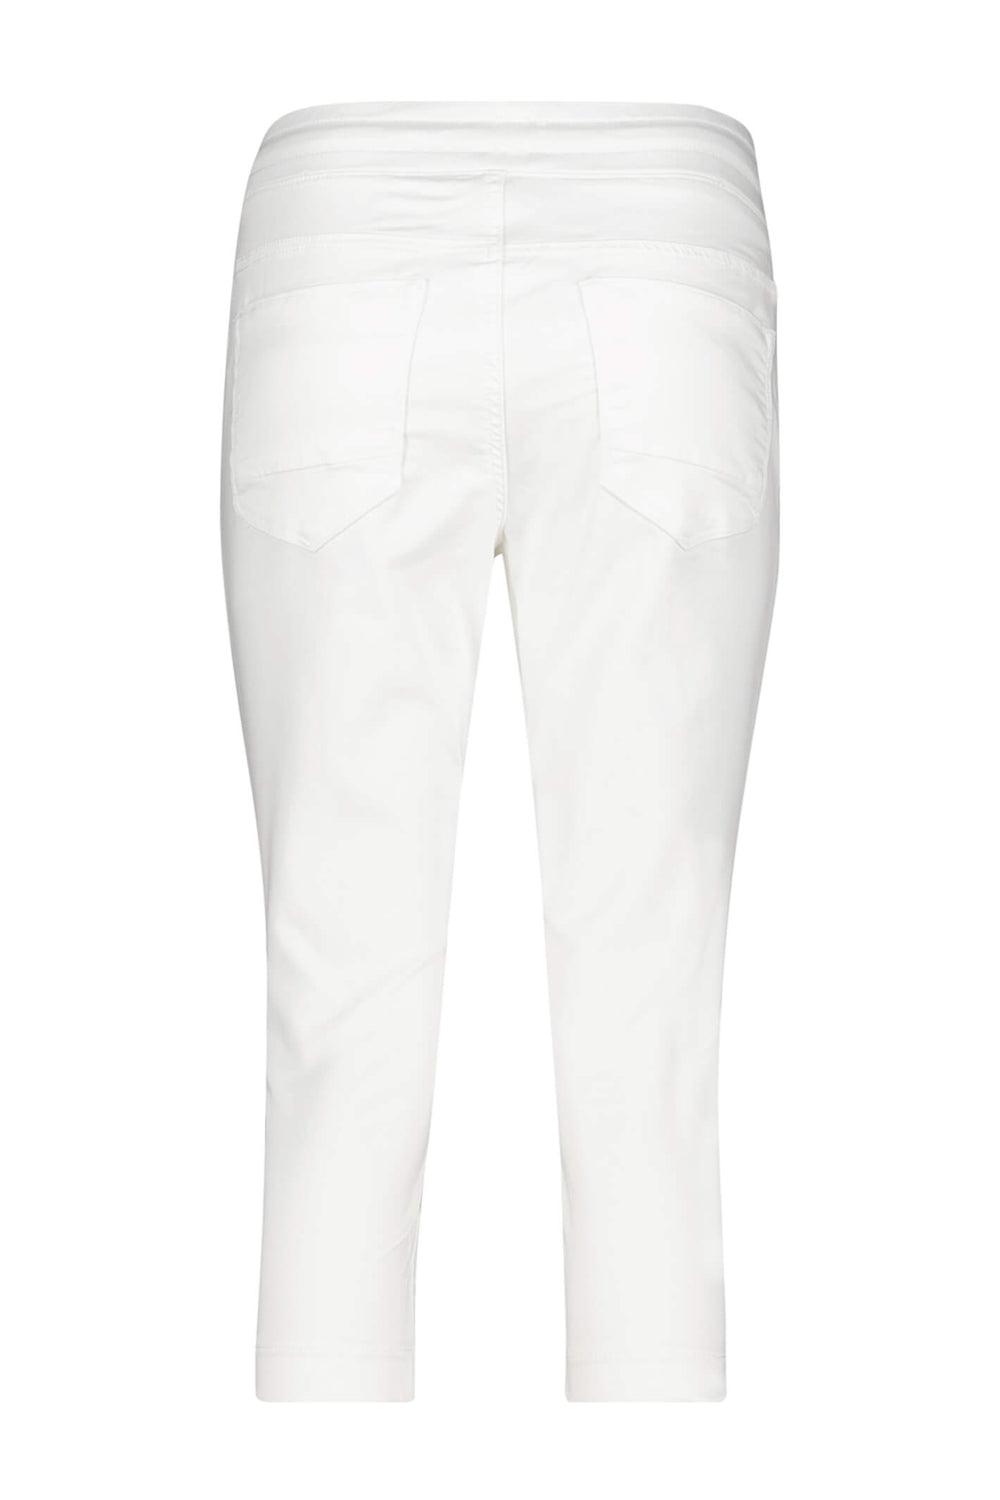 Red Button SRB4034 Tessy White Capri Jogger Trousers - Olivia Grace Fashion